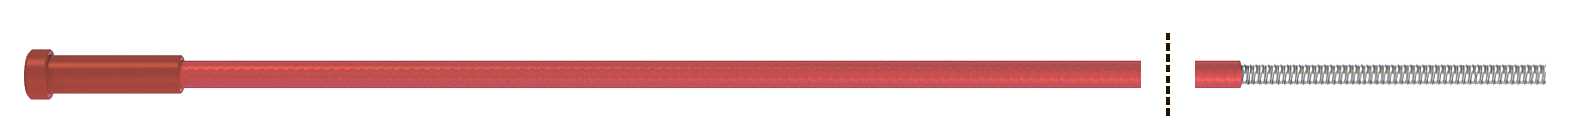 Fubag Канал направляющий 5.40 м диам. 1.0-1.2_сталь_красный (1 шт.) FB.SLR-50 MAG фото, изображение